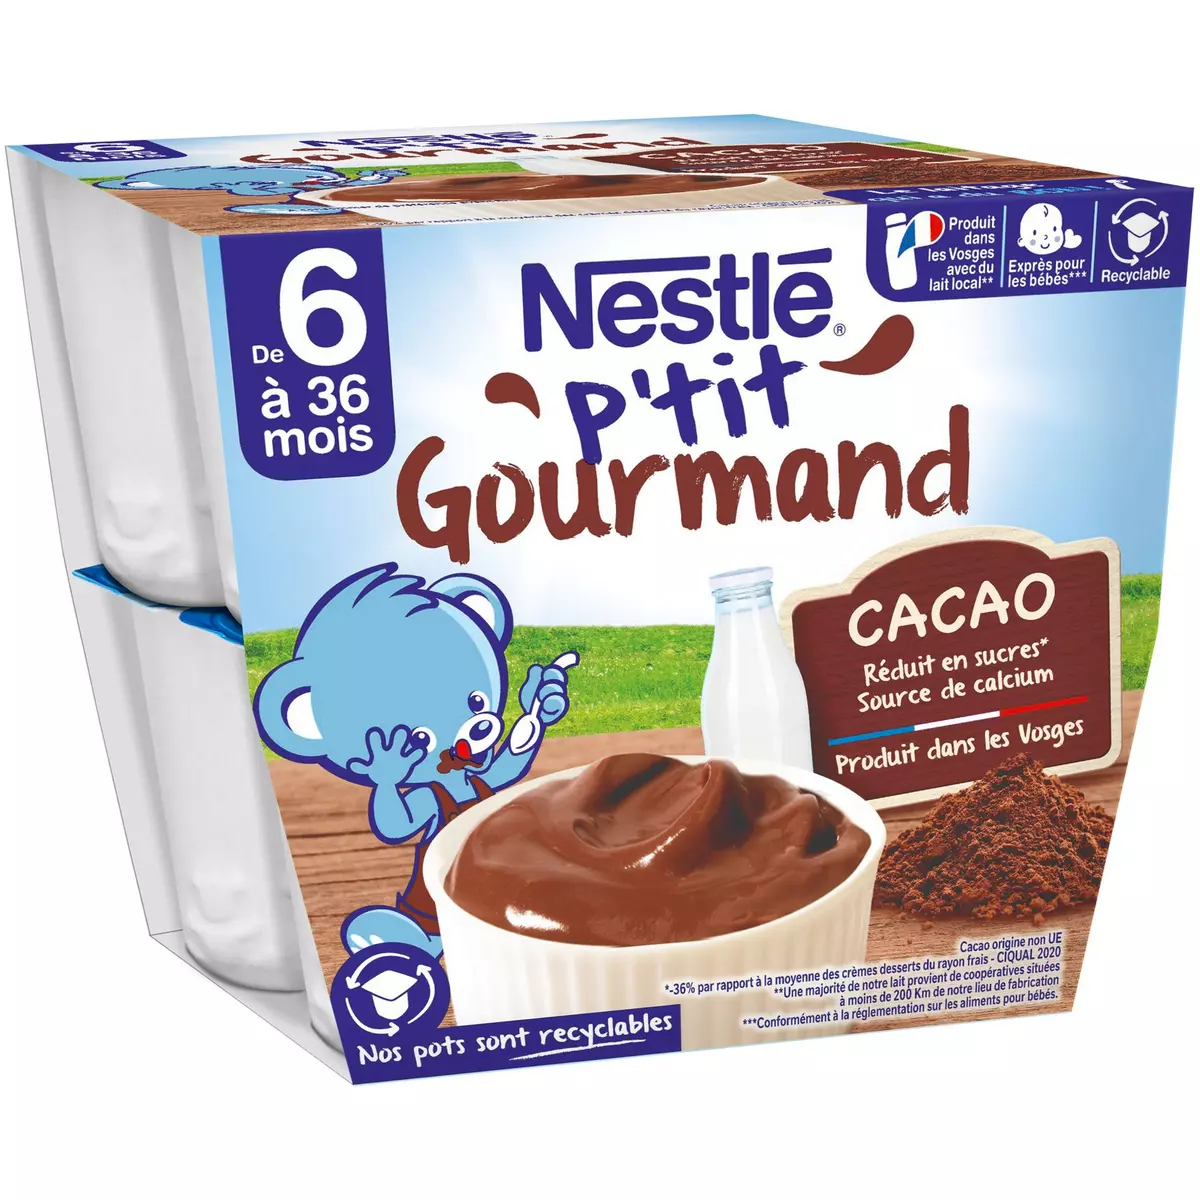 NESTLE P'tit gourmand petit pot crème dessert chocolat dès 8 mois 8x100g